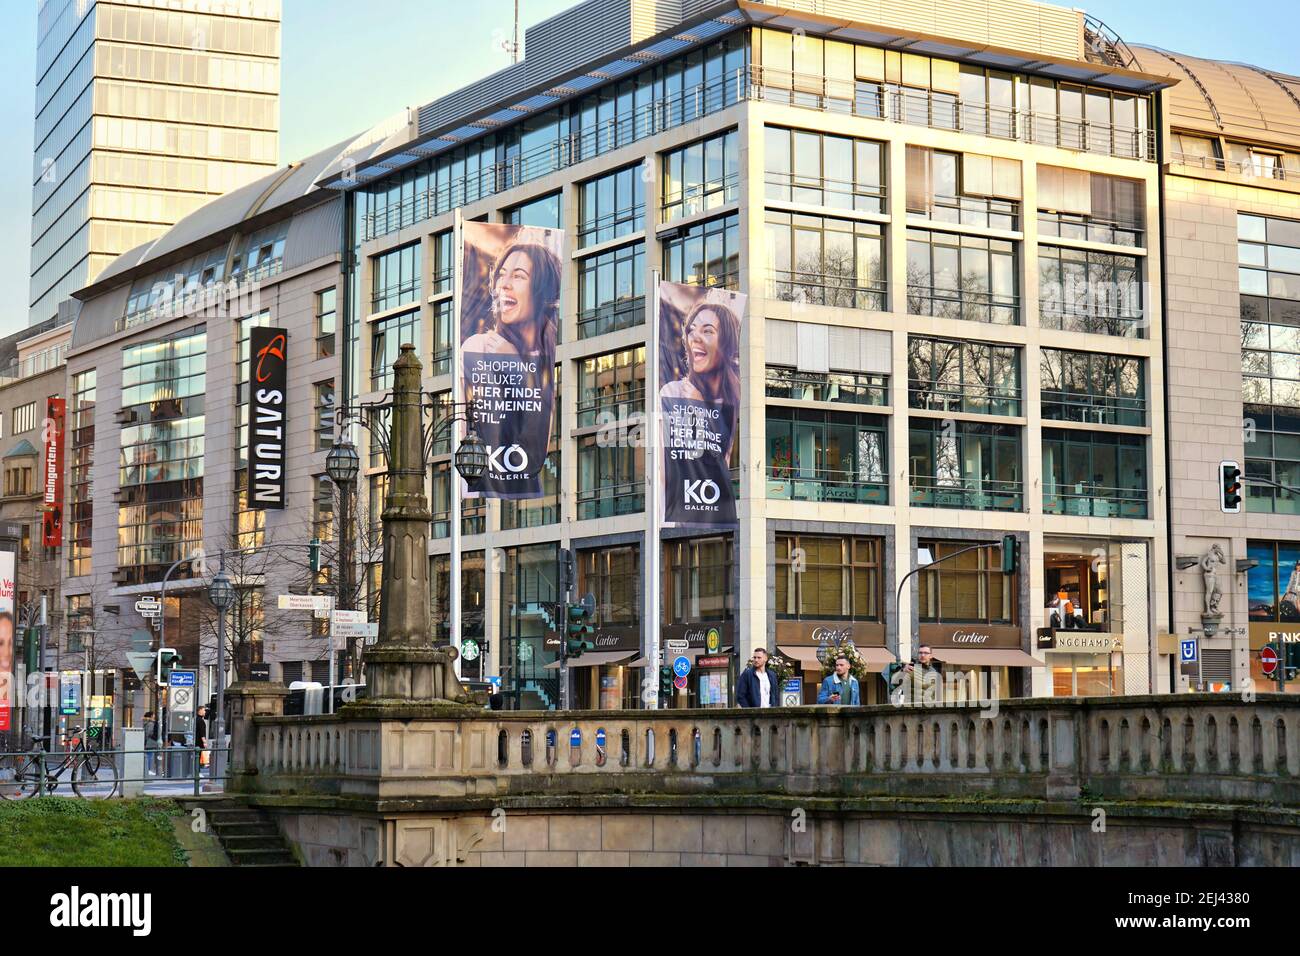 Geschäftsgebäude mit Werbeflagge an der Königsallee in Düsseldorf, einer der führenden gehobenen Einkaufsstraßen Europas. Stockfoto